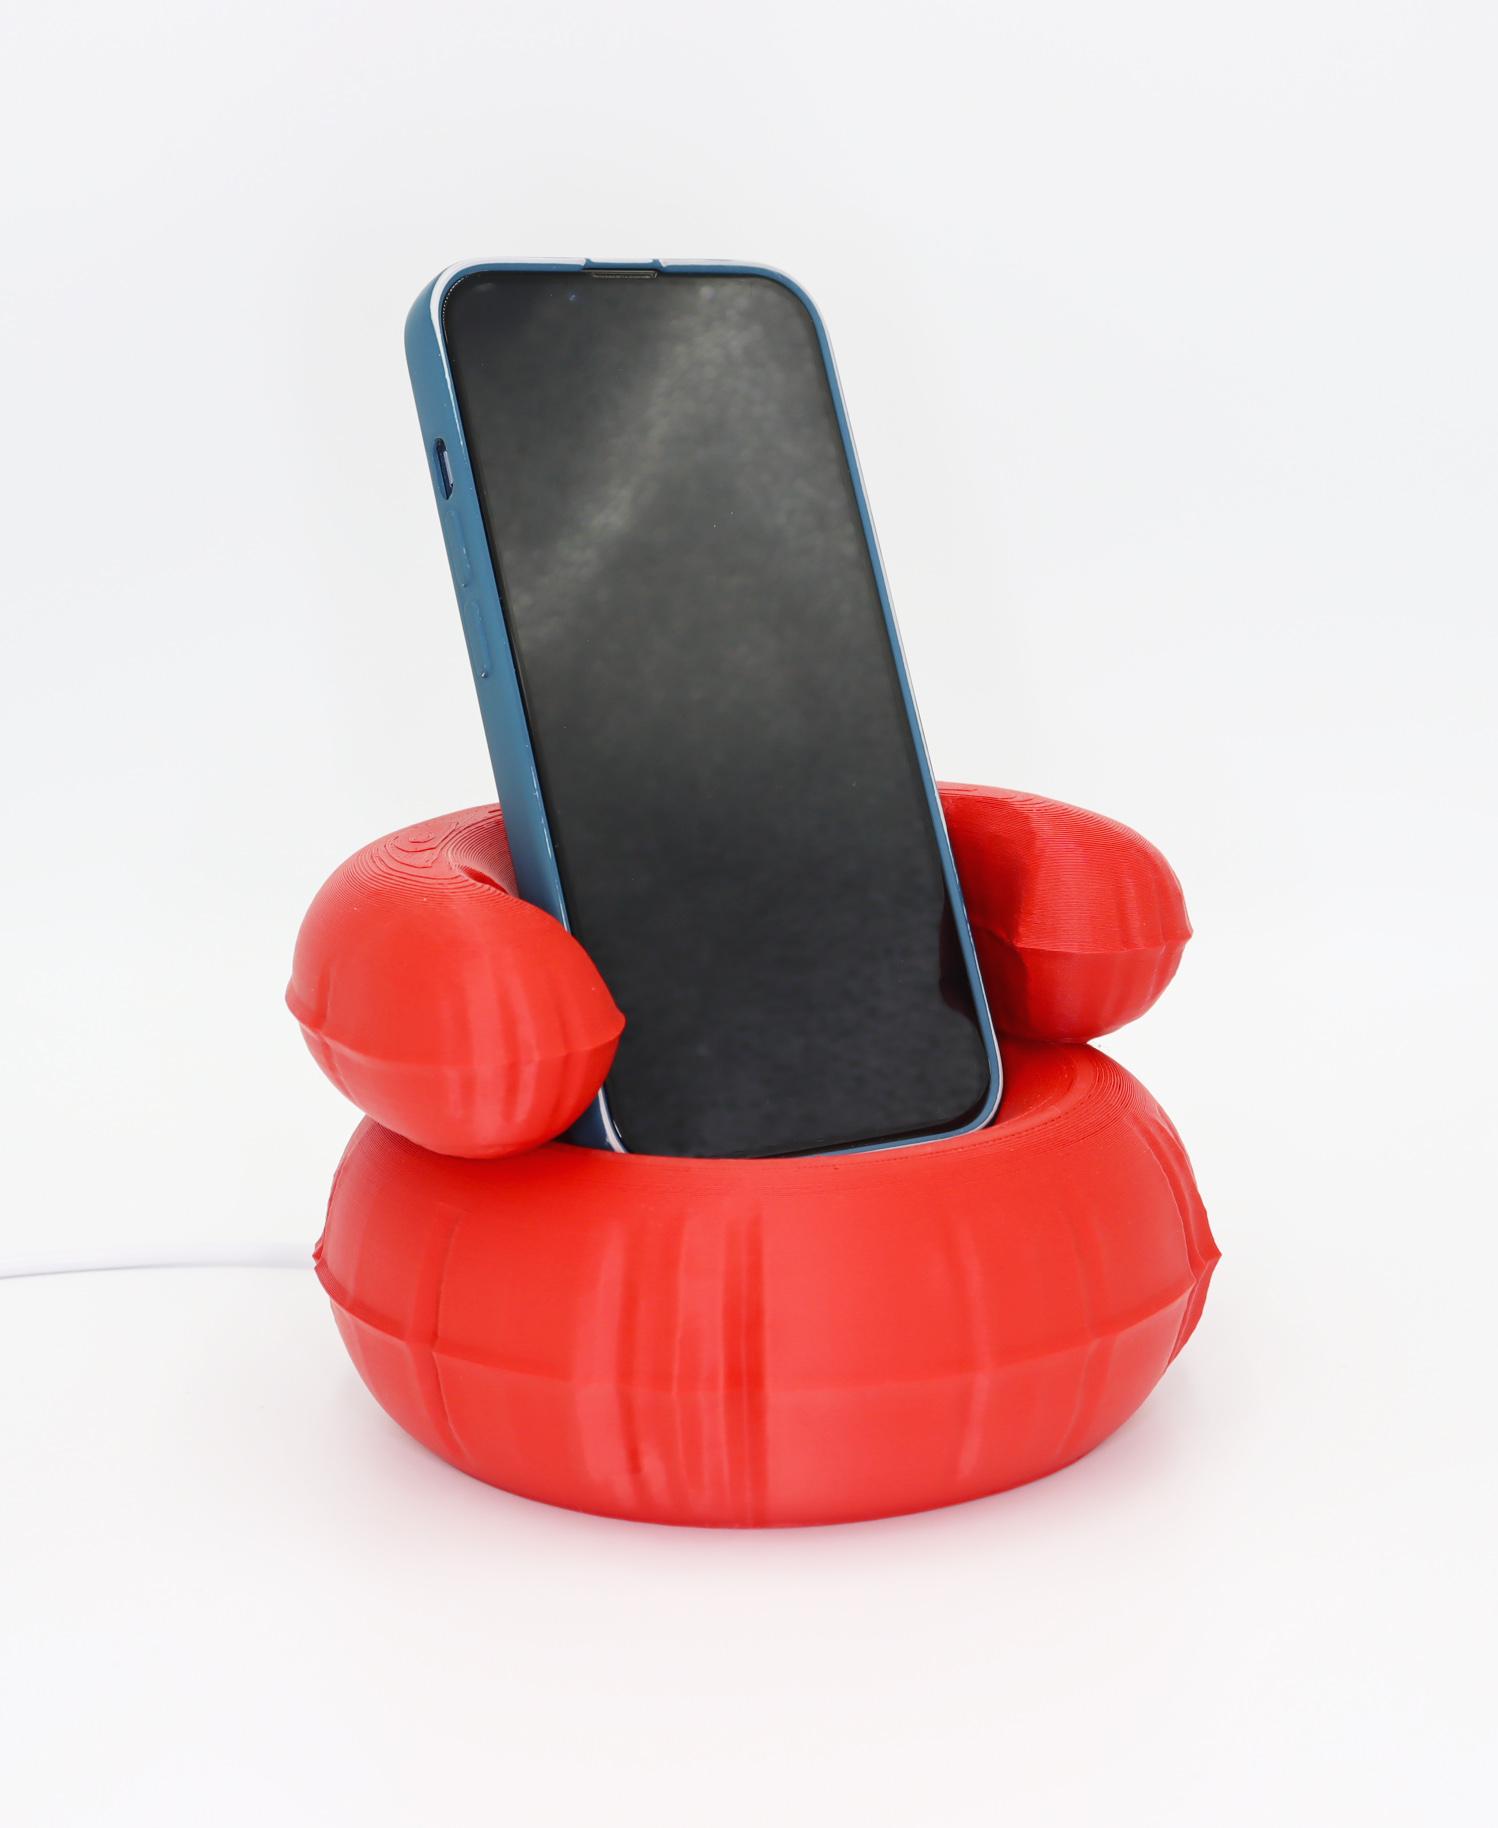 Phone holder floaty 3d model